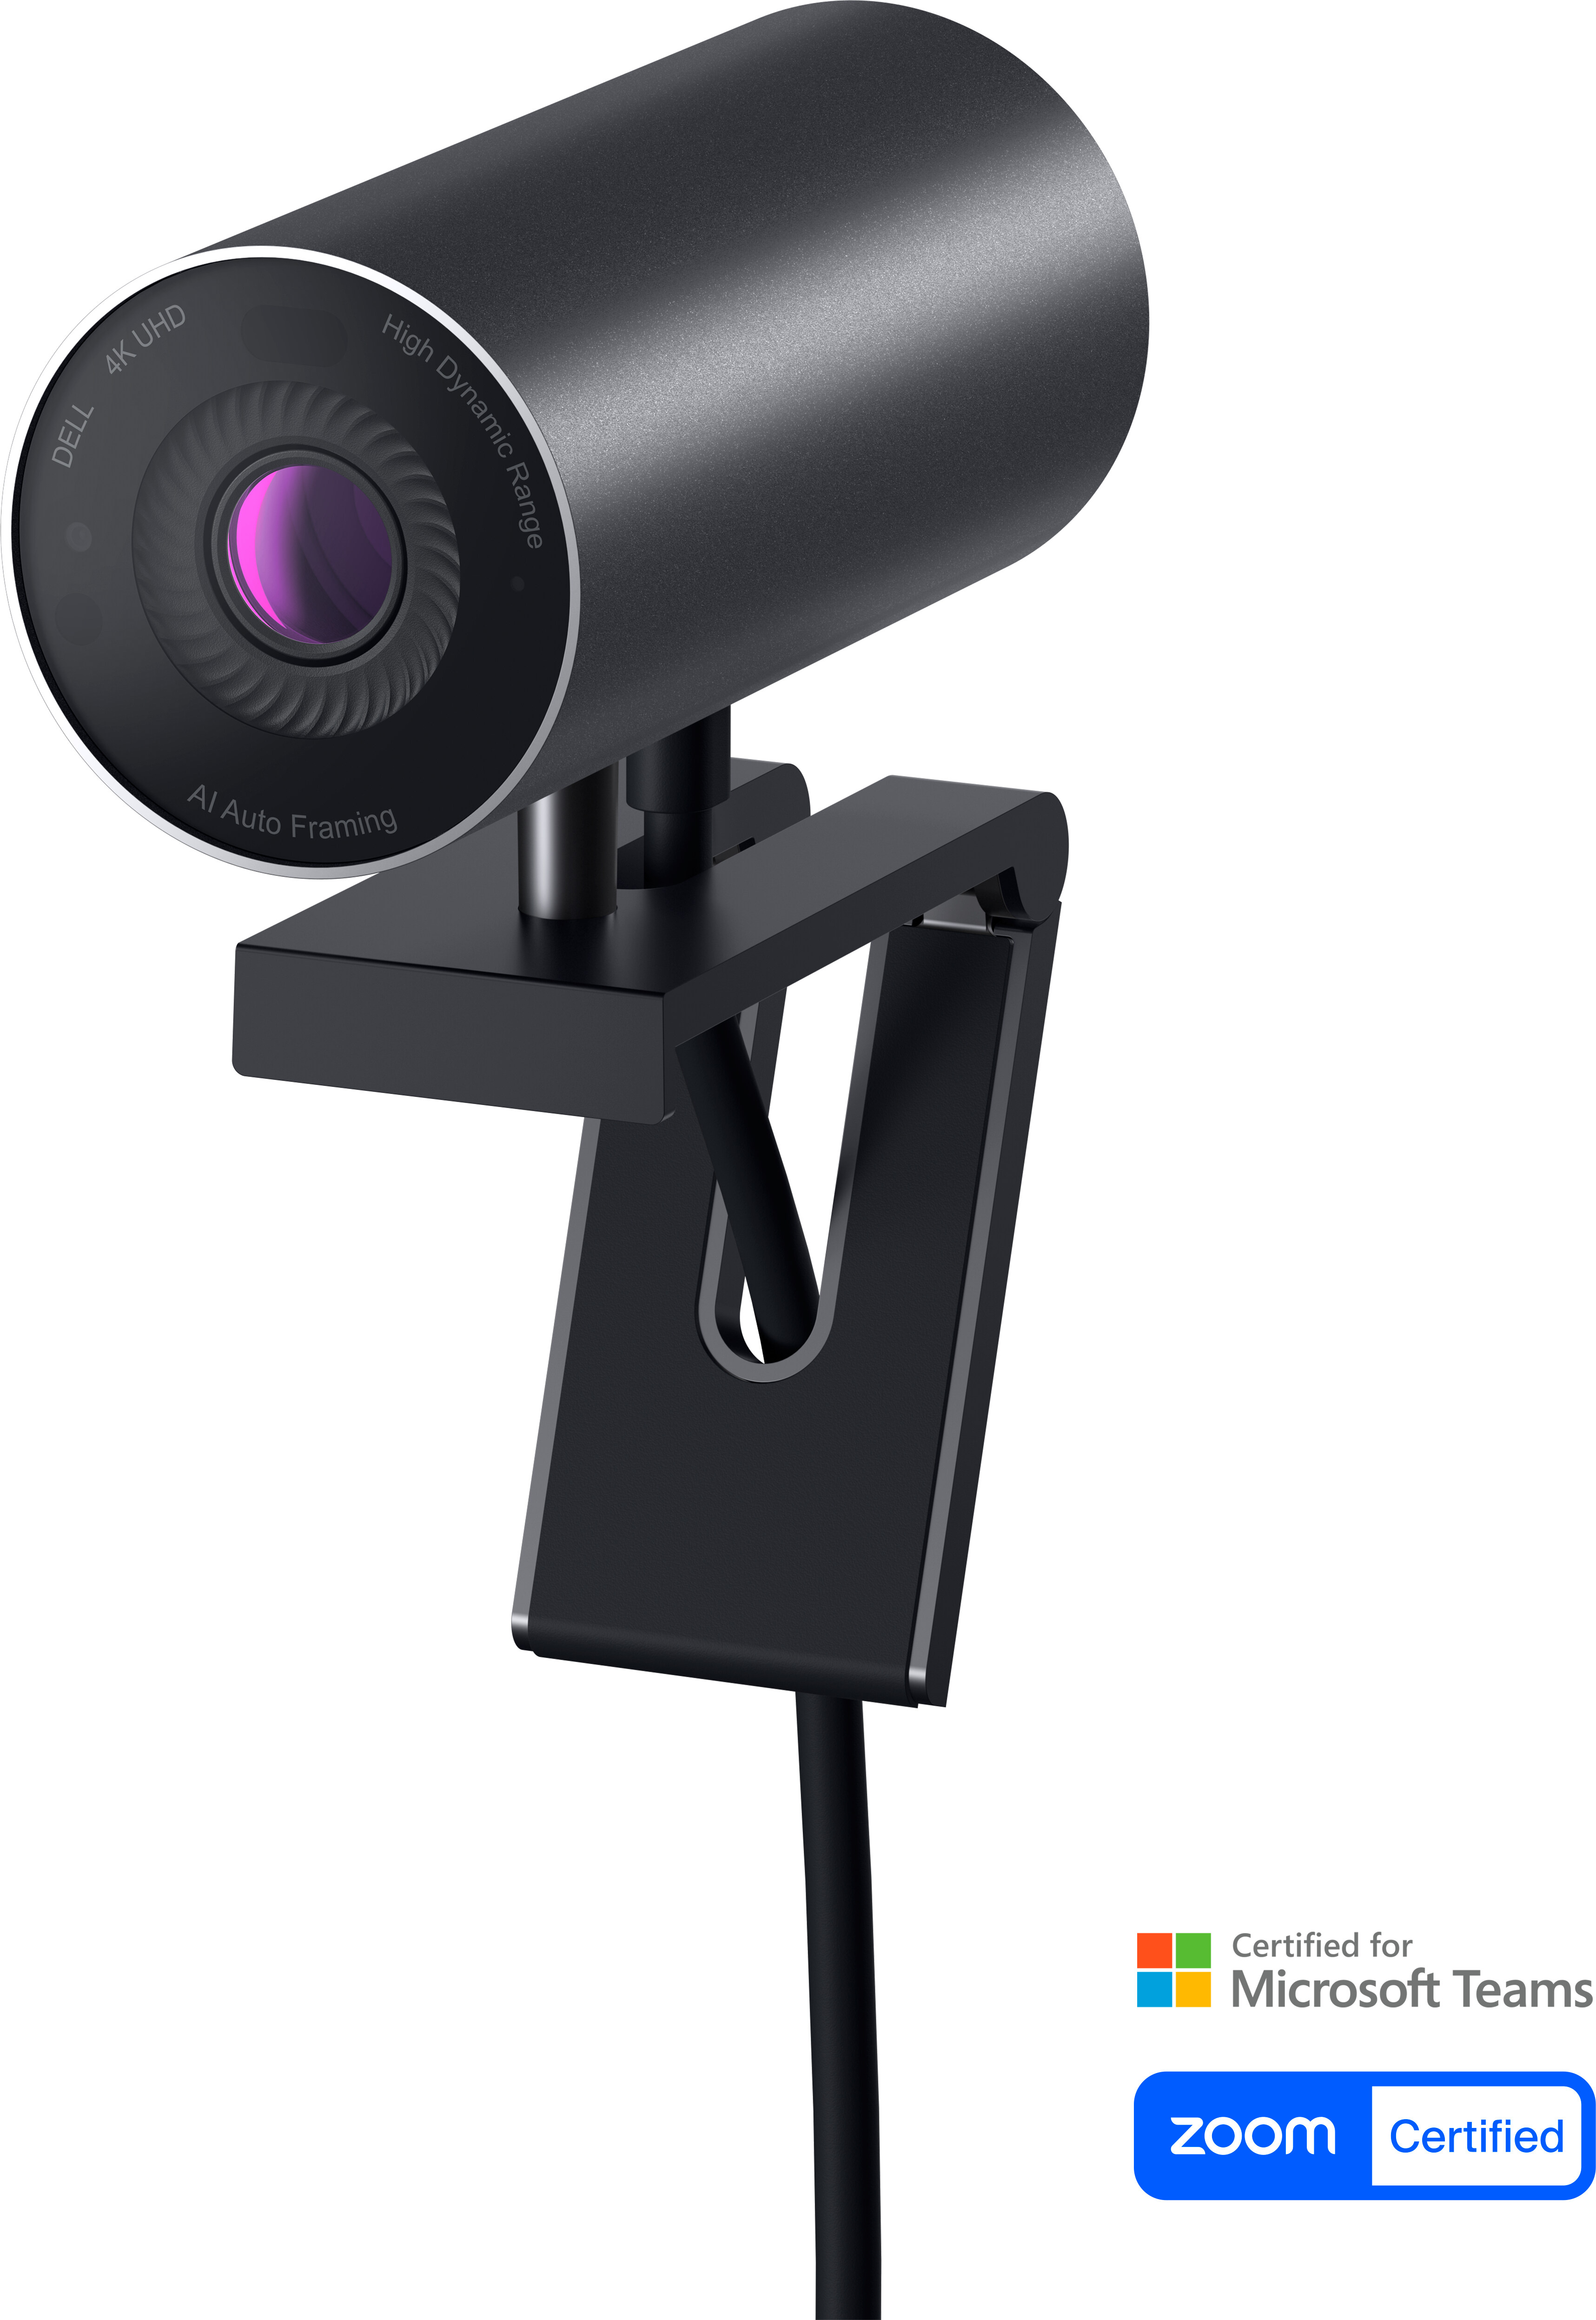 Dell UltraSharp Webcam - WB7022 - 4K UHD | Dell USA